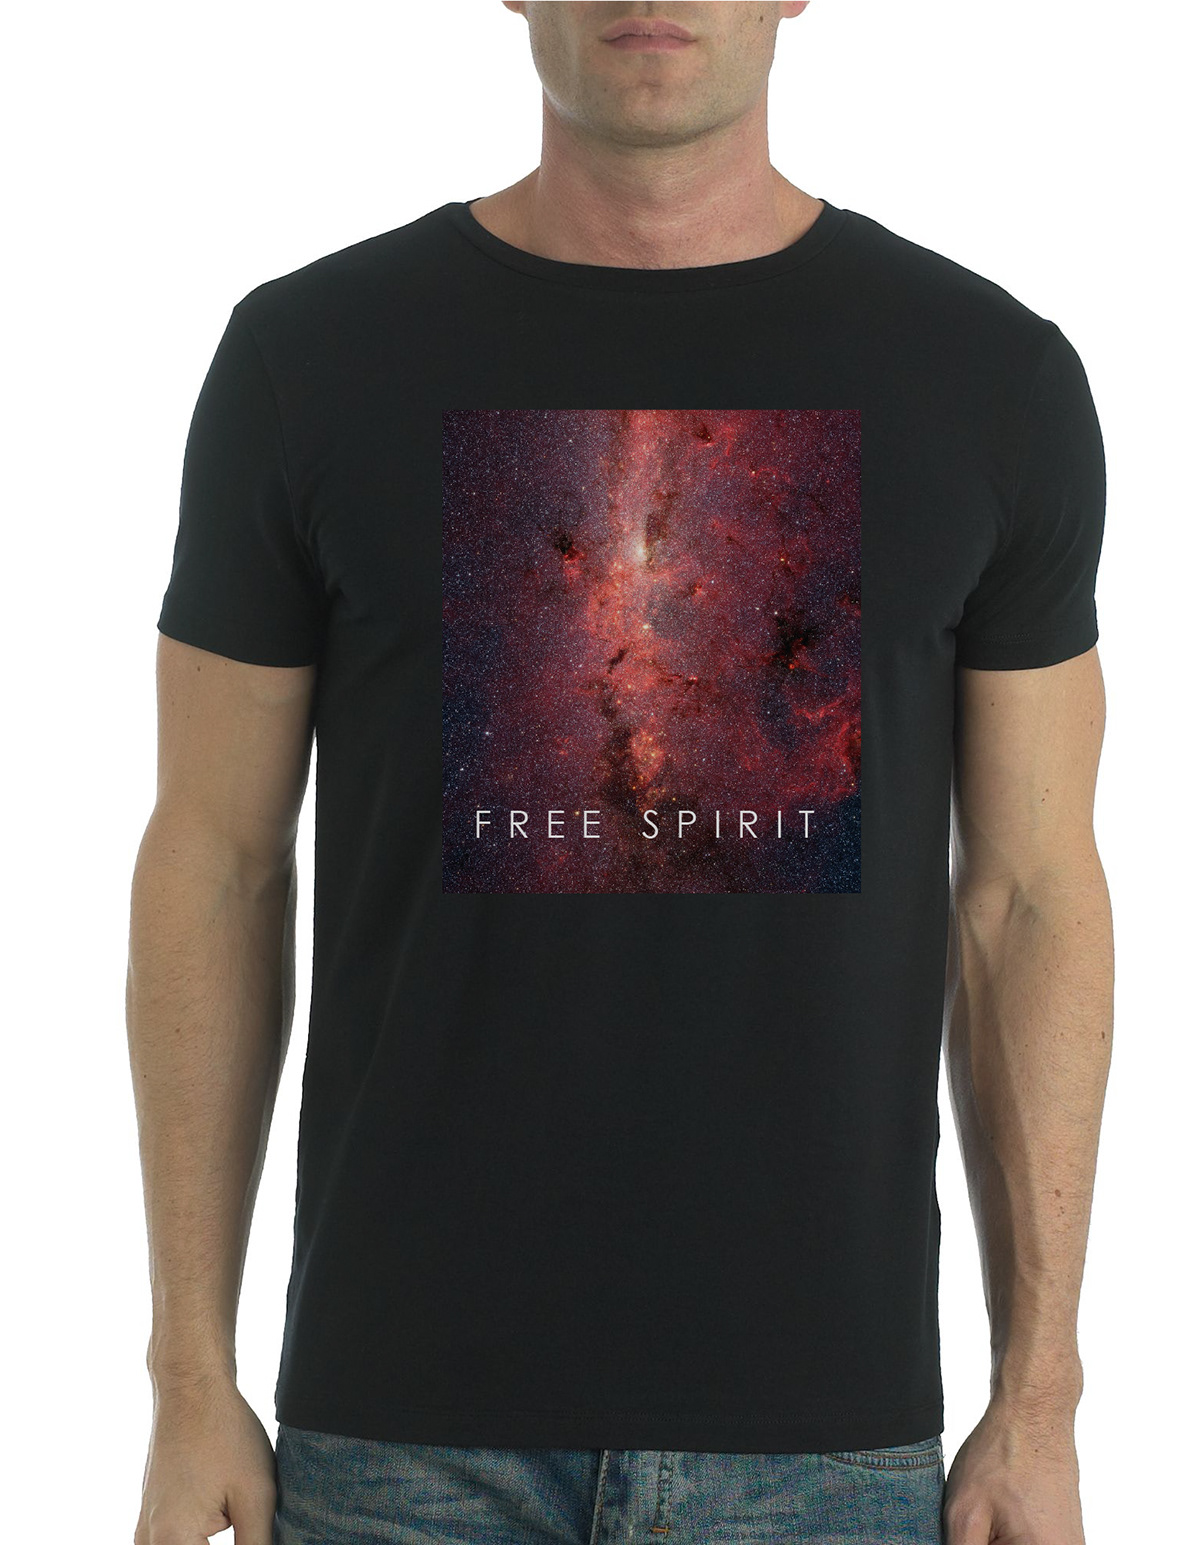 free spirit free spirit matthew davis matthew davis T-Shirt Design Clothing free spirit clothing Logo Design